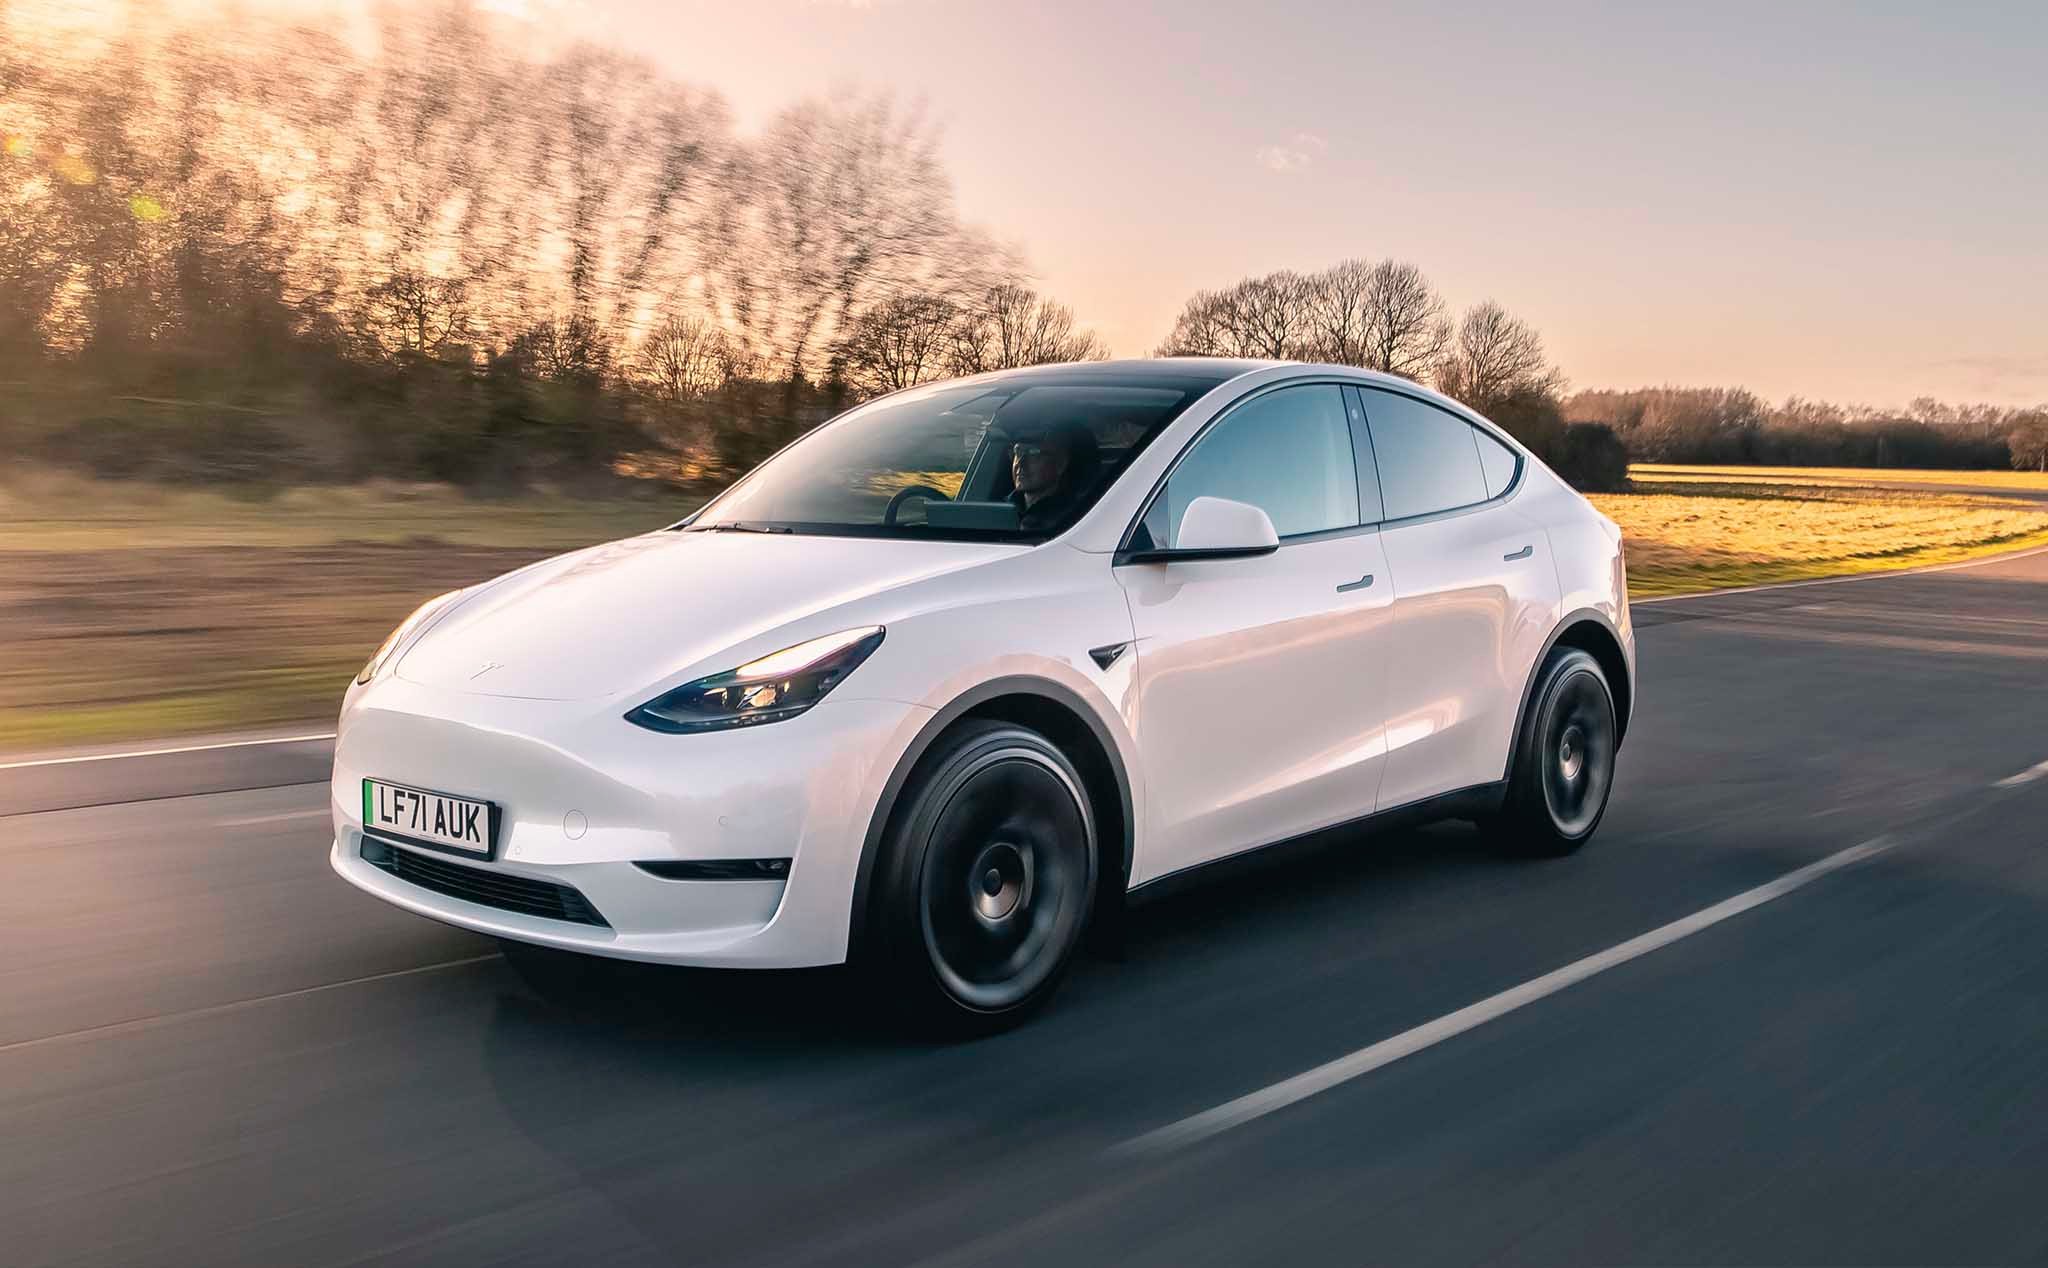 Tesla hứa sẽ cho ra mắt những mẫu xe có giá dễ chịu hơn